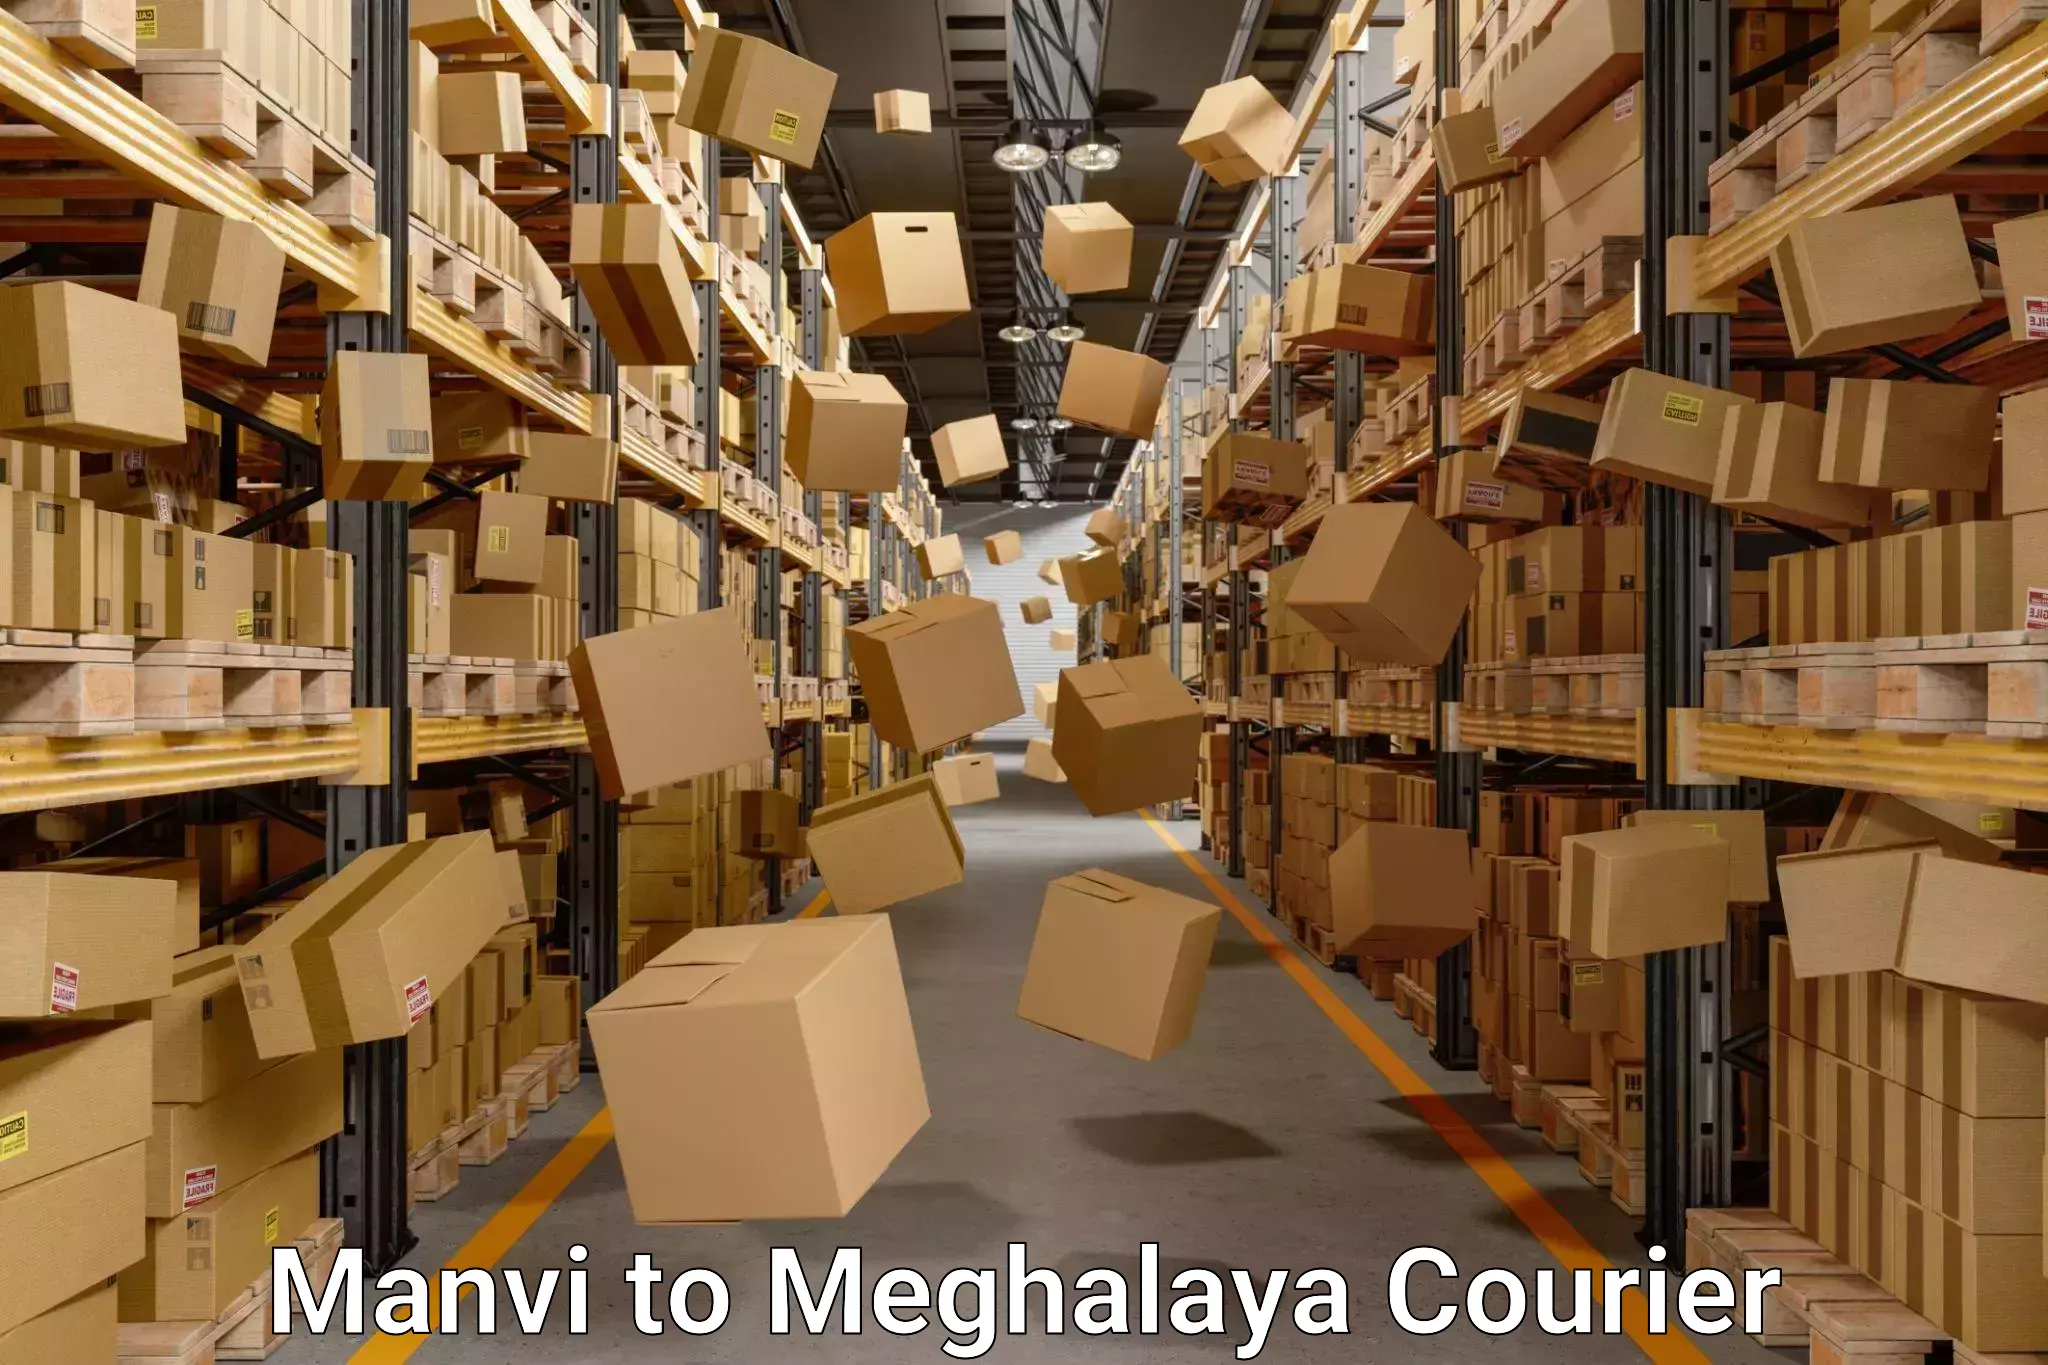 Furniture transport experts Manvi to Meghalaya